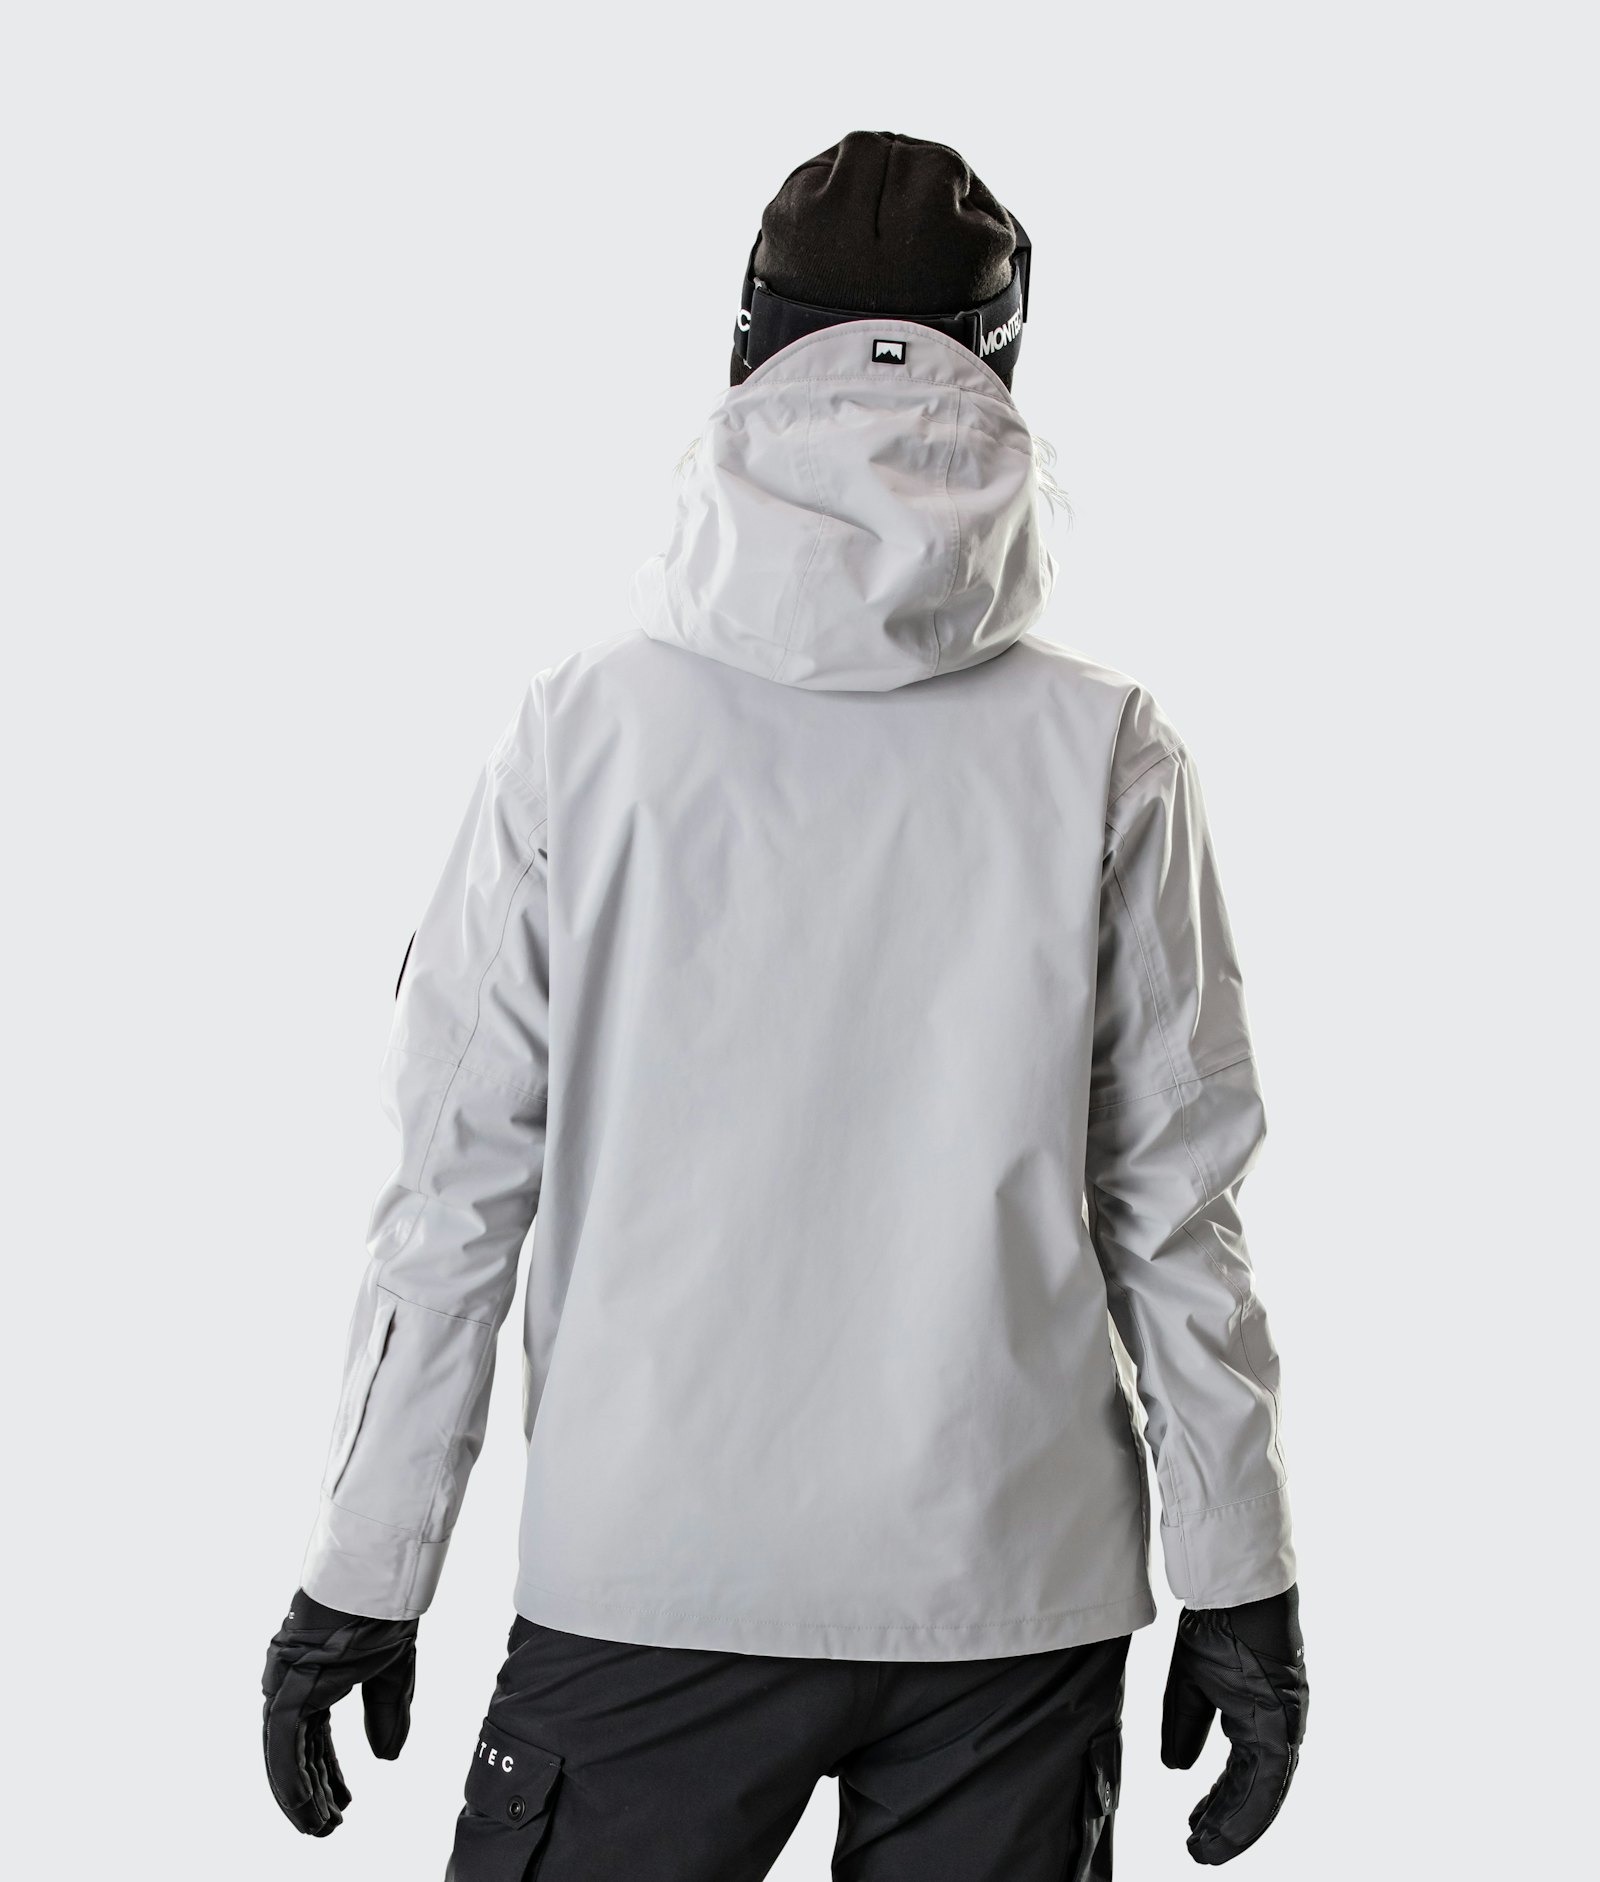 Typhoon W 2020 Snowboardjacke Damen Light Grey/Black